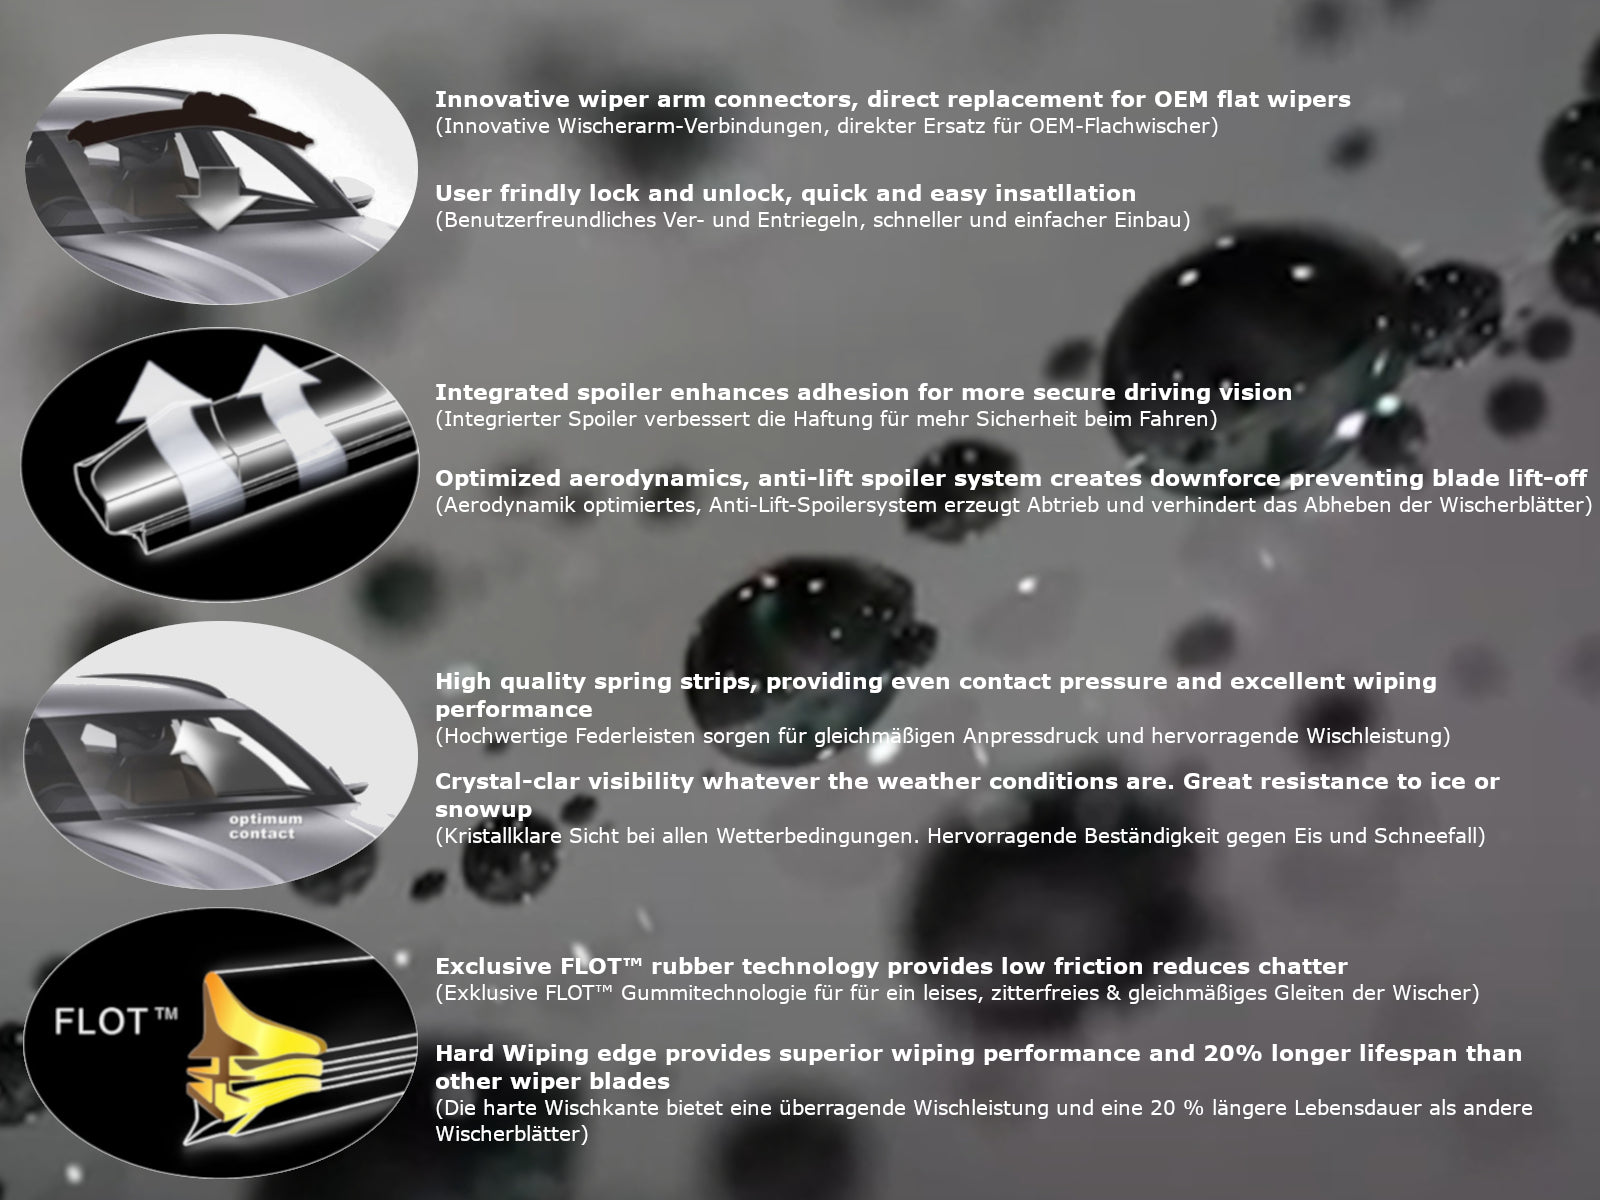 MARUTA Scheibenwischer-Set für Frontscheibe, Aero-dynamik optimierte Wischerblätter aus wasserabweisendem Silikon mit Multi Plattform Adapter - Perleffekt für streifenfreie Sicht - Bild 5